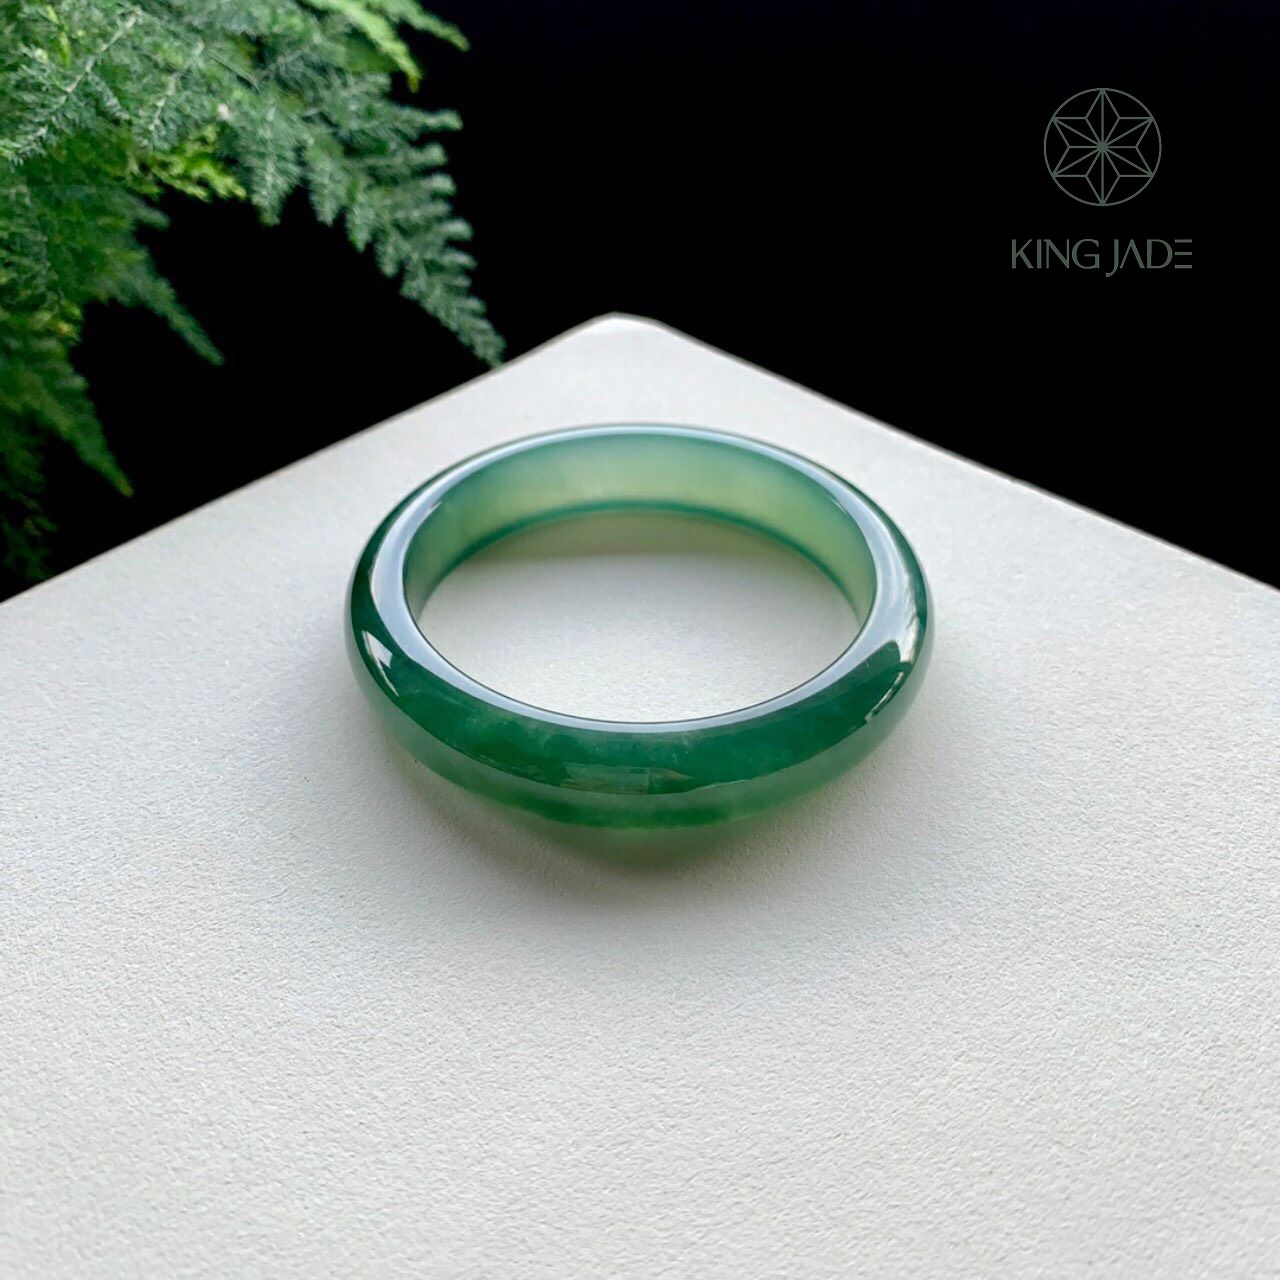 Vòng Ngọc Phỉ Thúy King Jade 032 - Sắc Xanh Tươi Mới